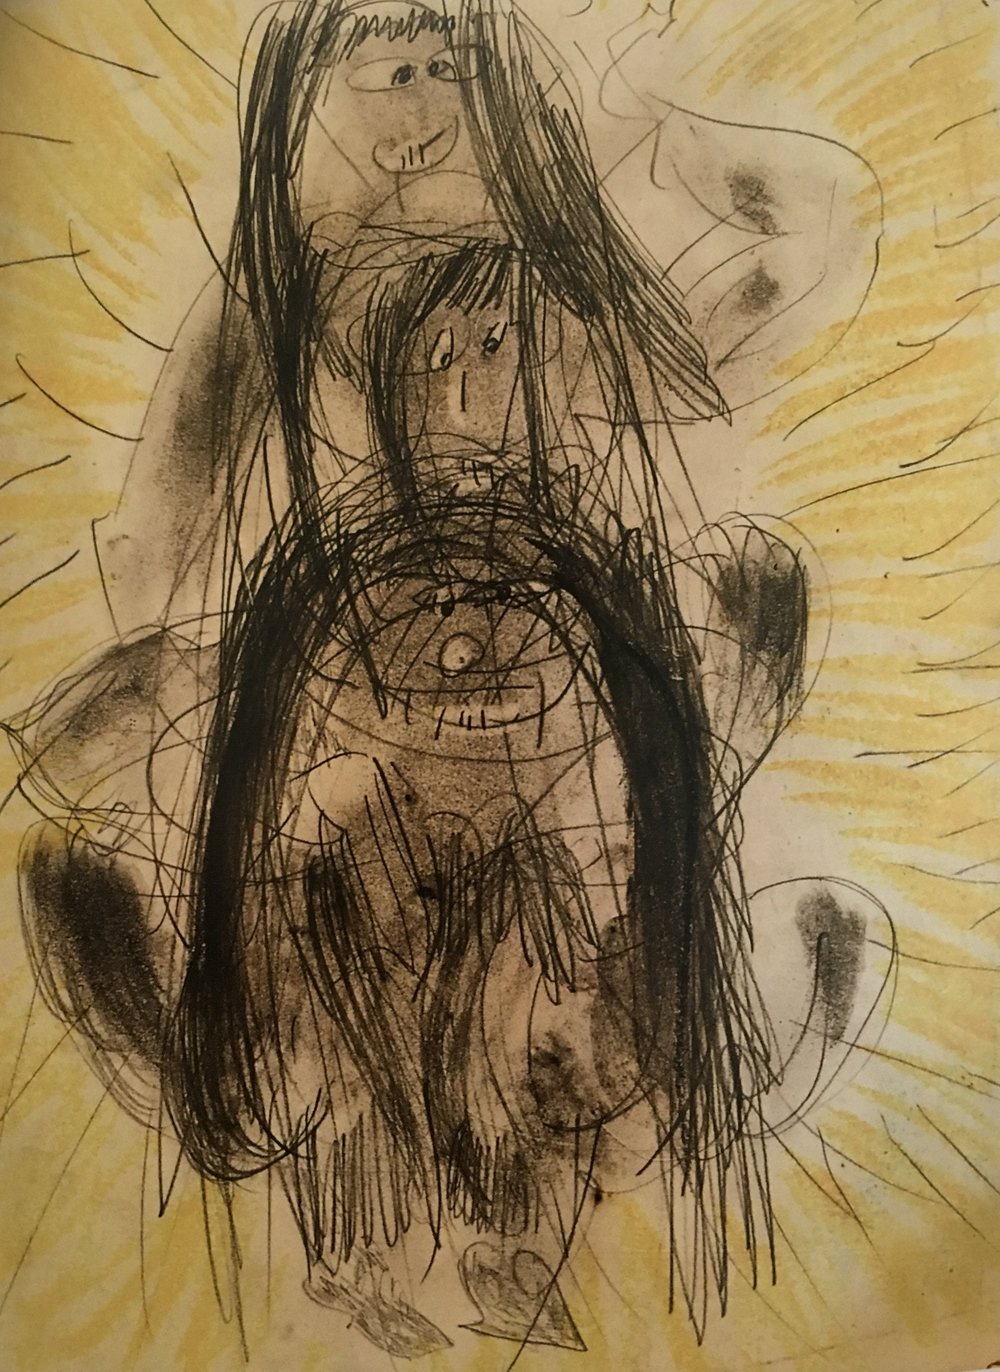 kerouac-drawing-oil-pastel-pencil-paper